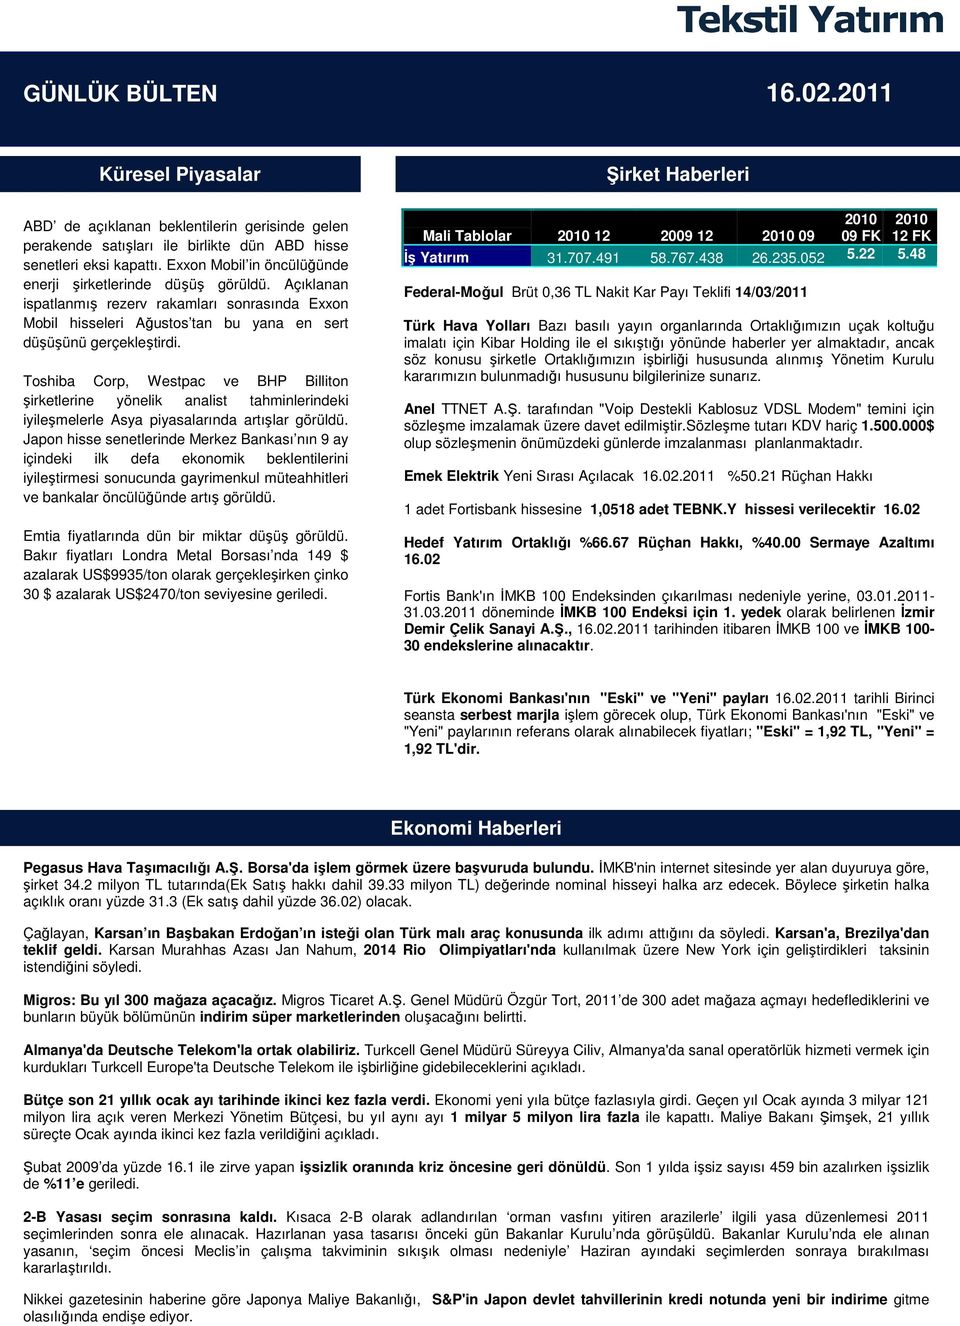 Toshiba Corp, Westpac ve BHP Billiton şirketlerine yönelik analist tahminlerindeki iyileşmelerle Asya piyasalarında artışlar görüldü.